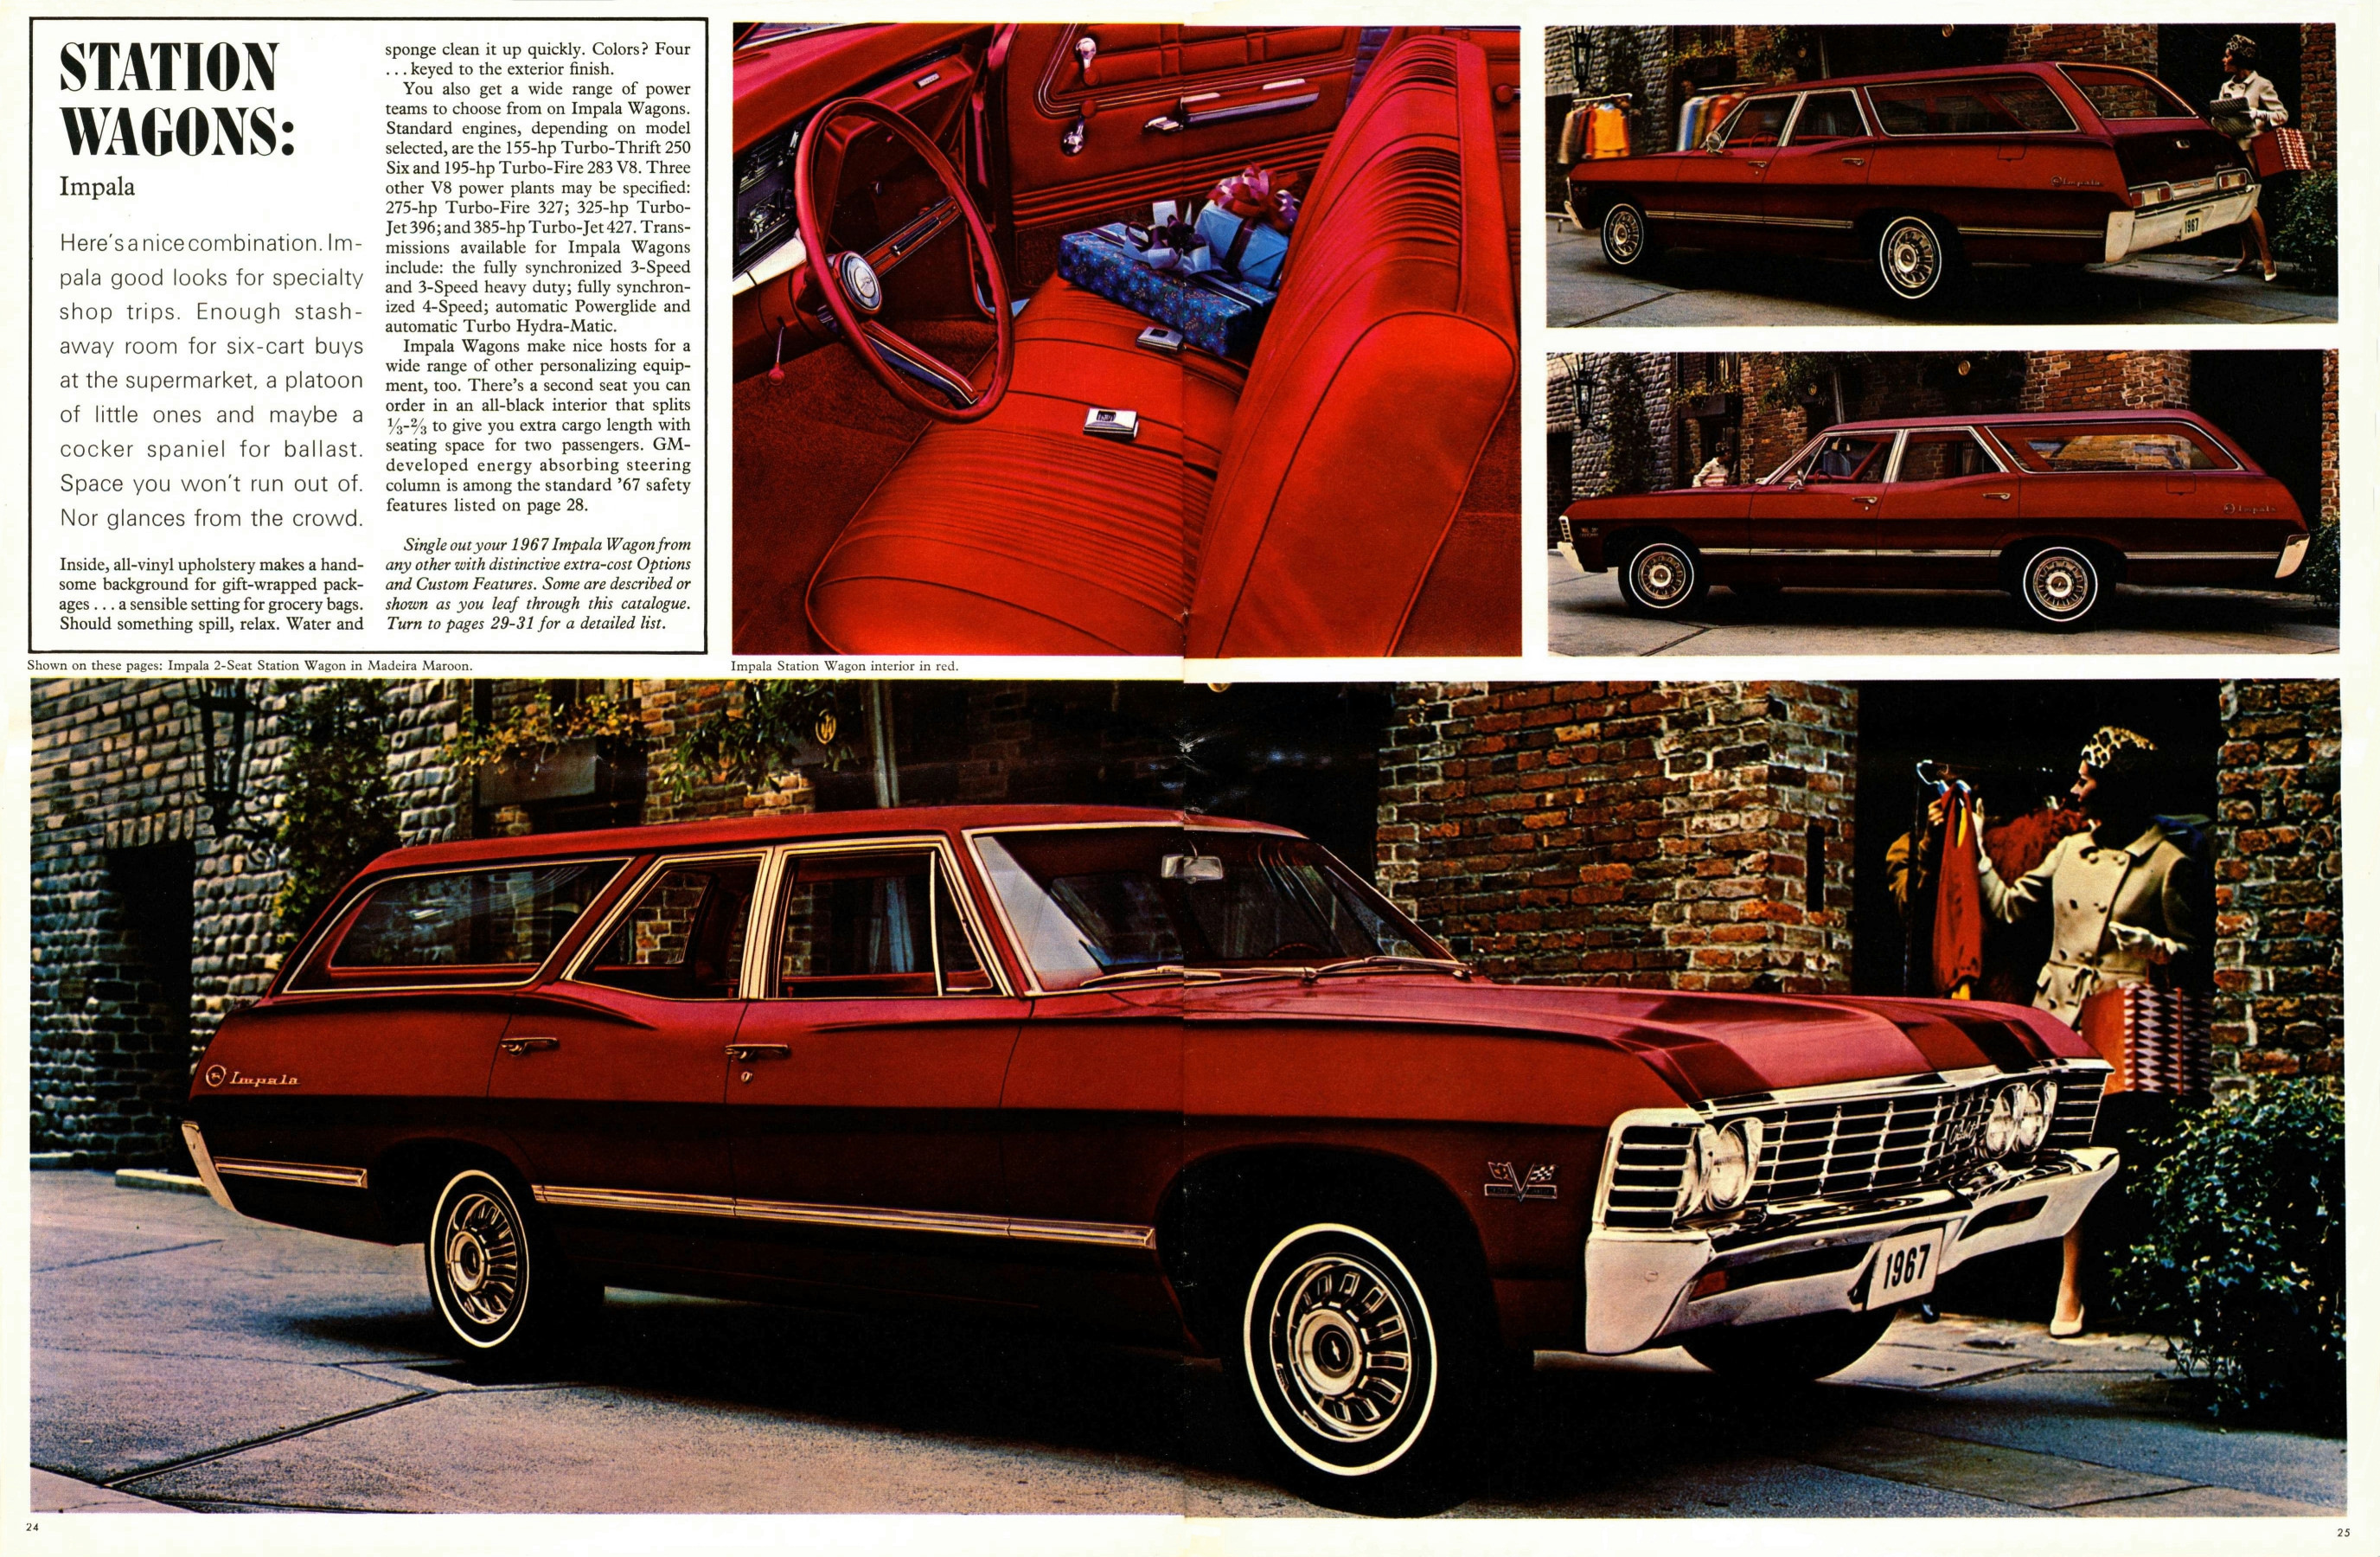 1967_Chevrolet_Full_Size_Cdn-24-25